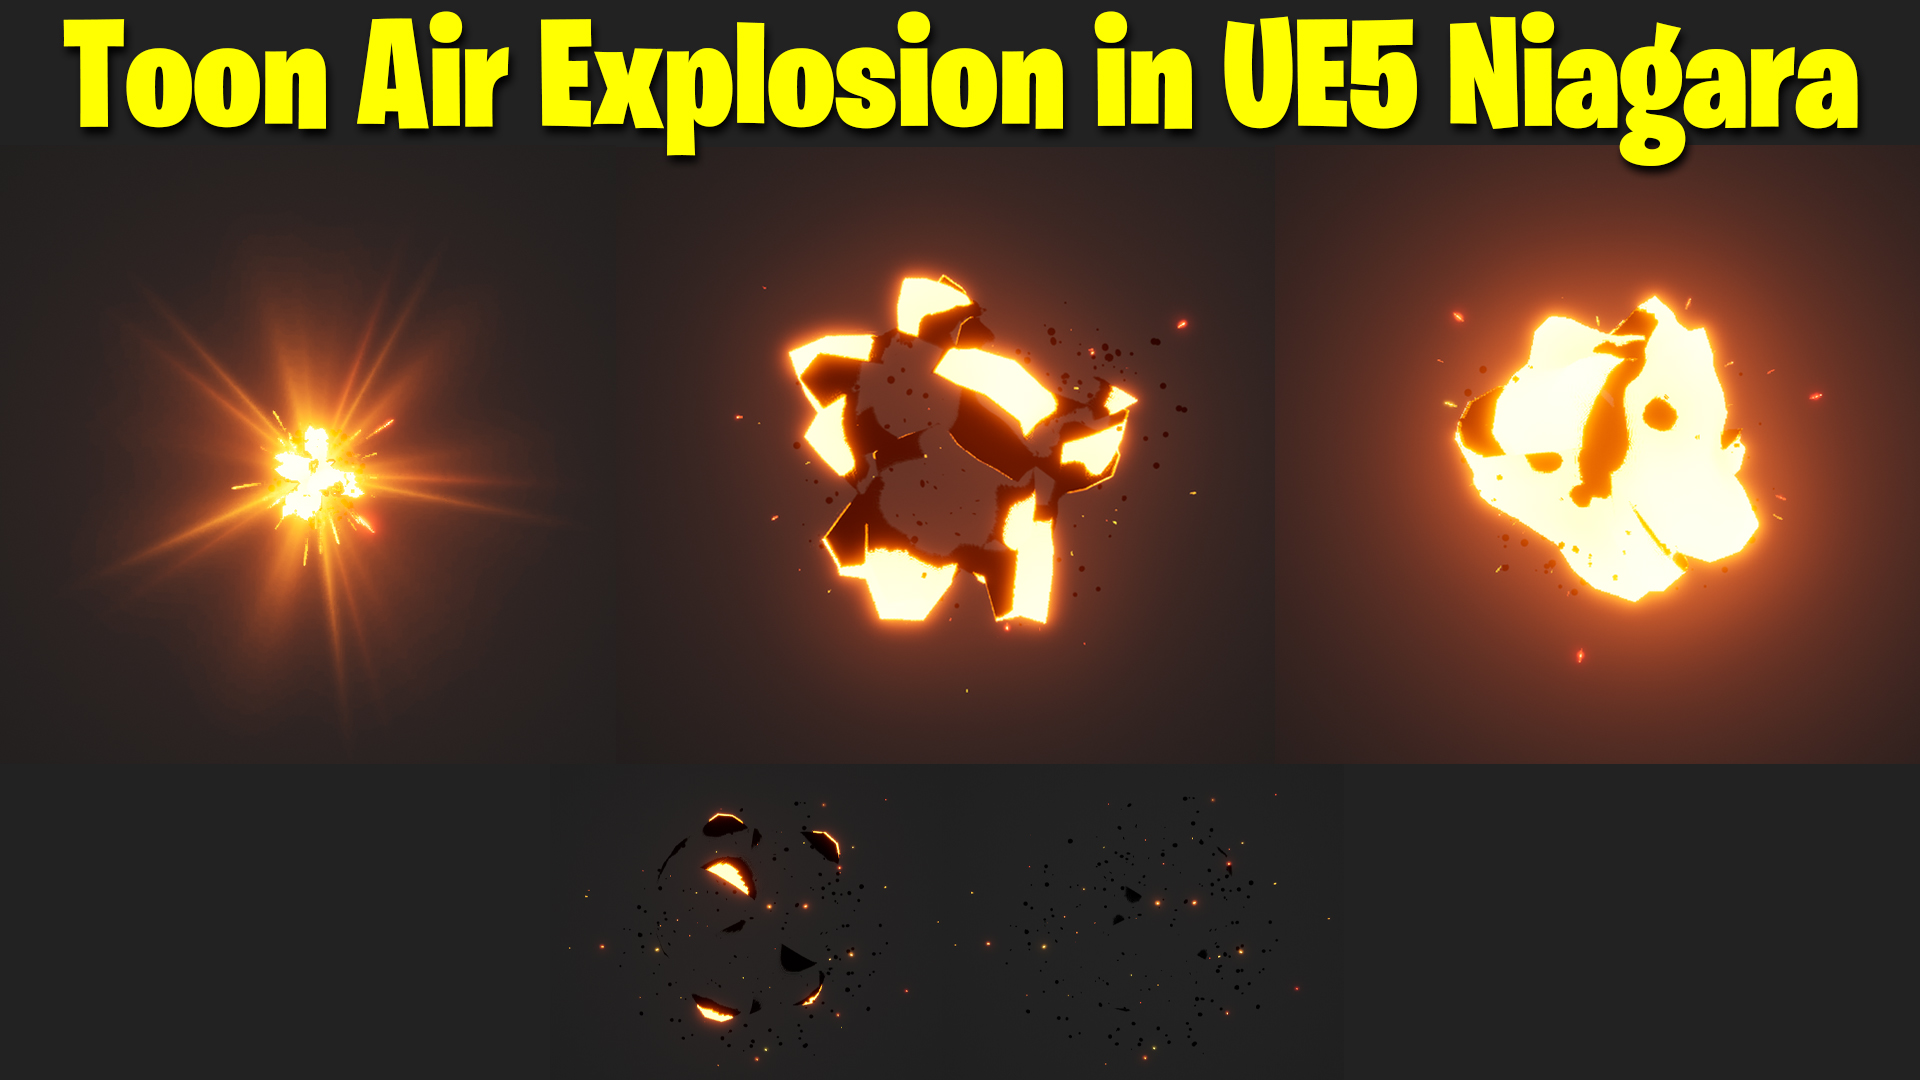 toon_air_explosion_ue5_niagara.jpg